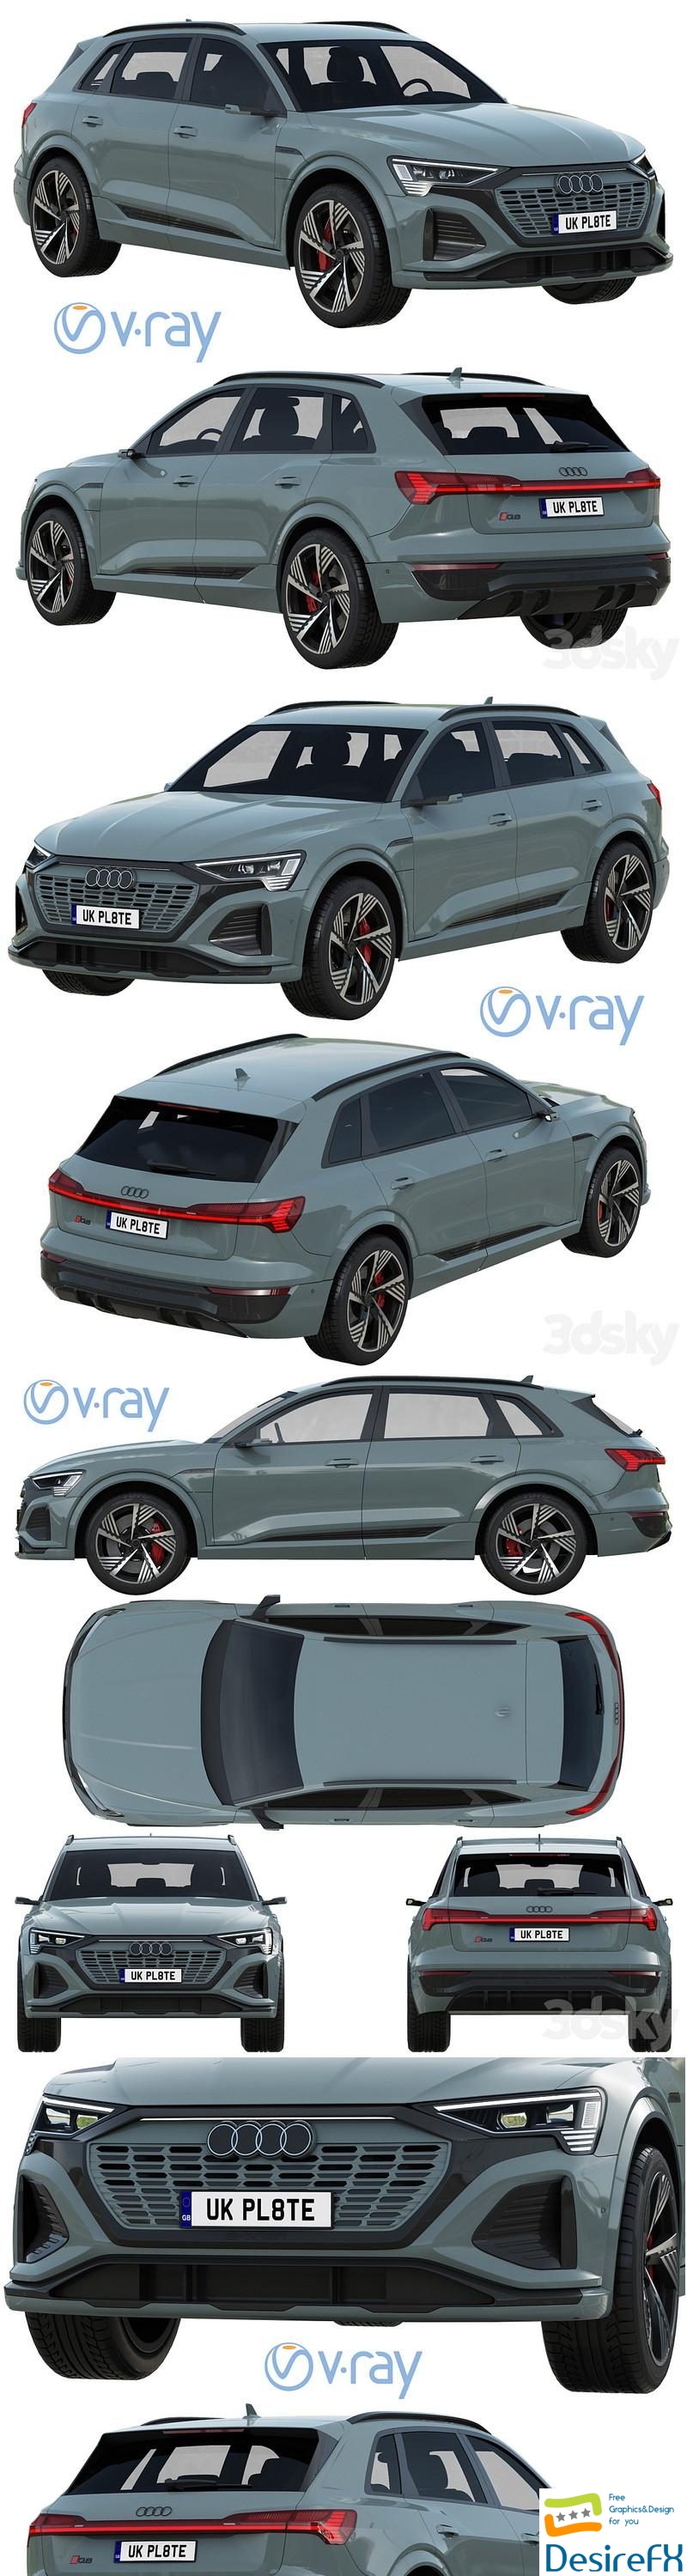 Audi Q8 e-tron V-Ray 3D Model